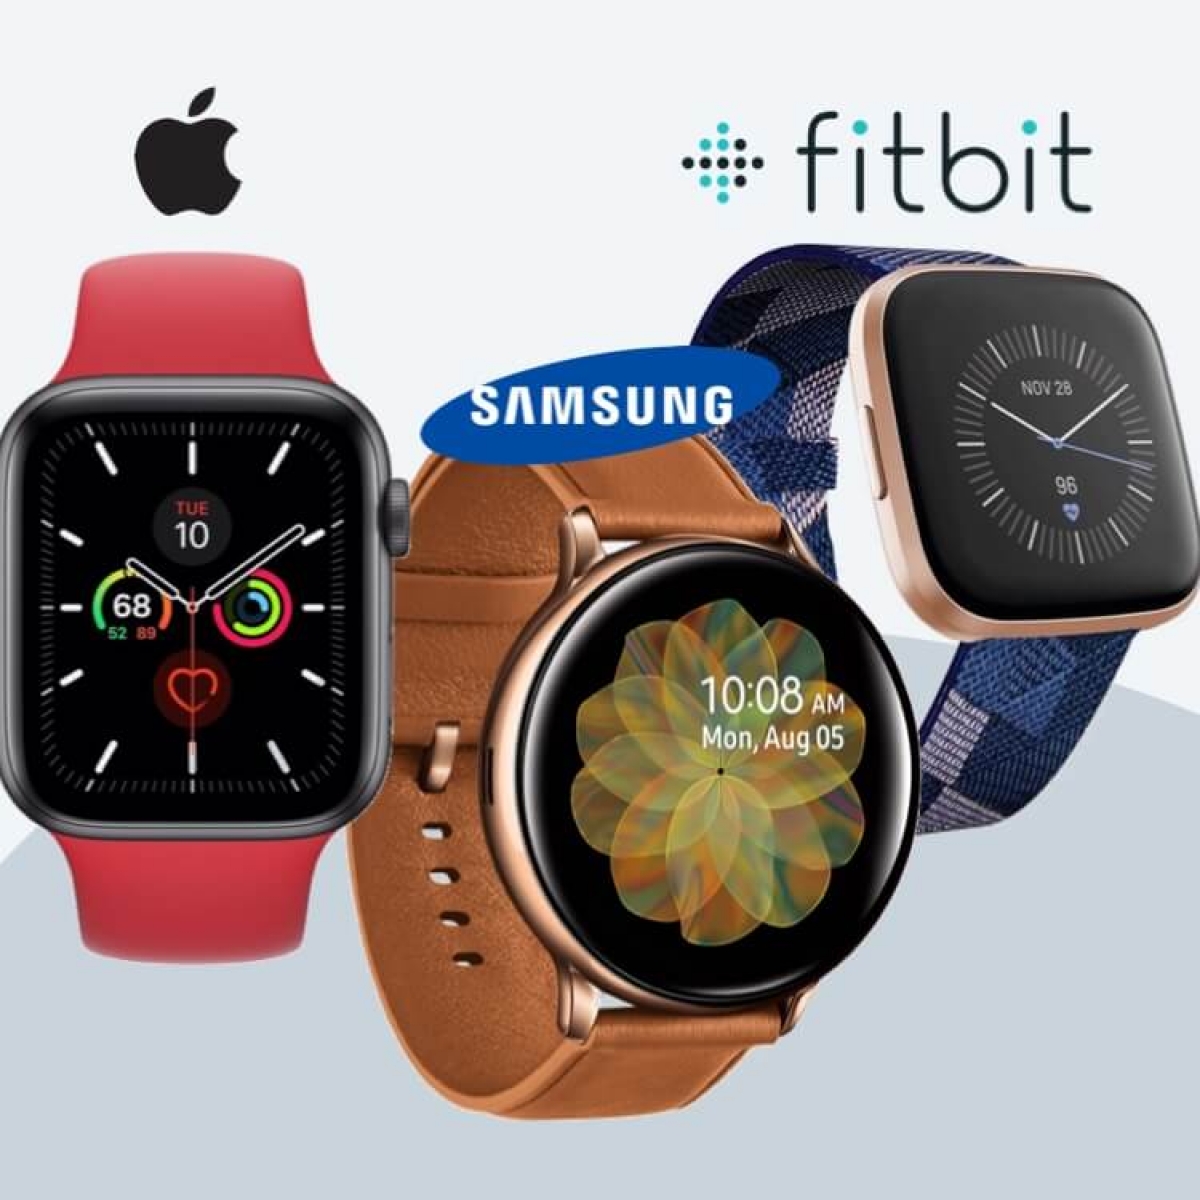 Smarwatches compared - Watch 5, Samsung Active 2, Fitbit Versa 2